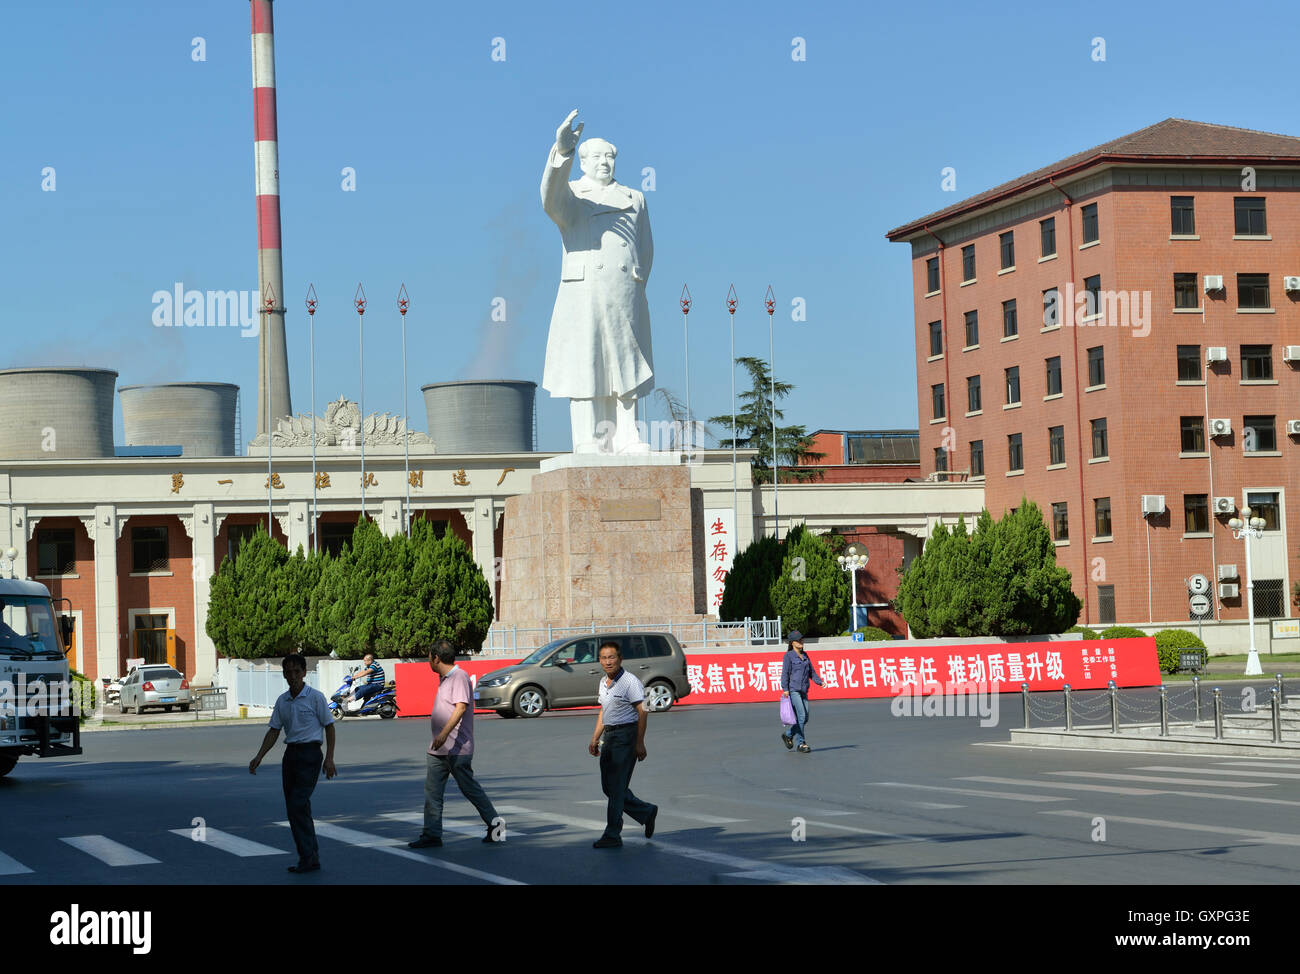 Une statue de la fin le président Mao Zedong se place en avant de l'OFJ(Luoyang) Moteur Diesel Co., Ltd. de Luoyang, province du Henan, Chine. Banque D'Images